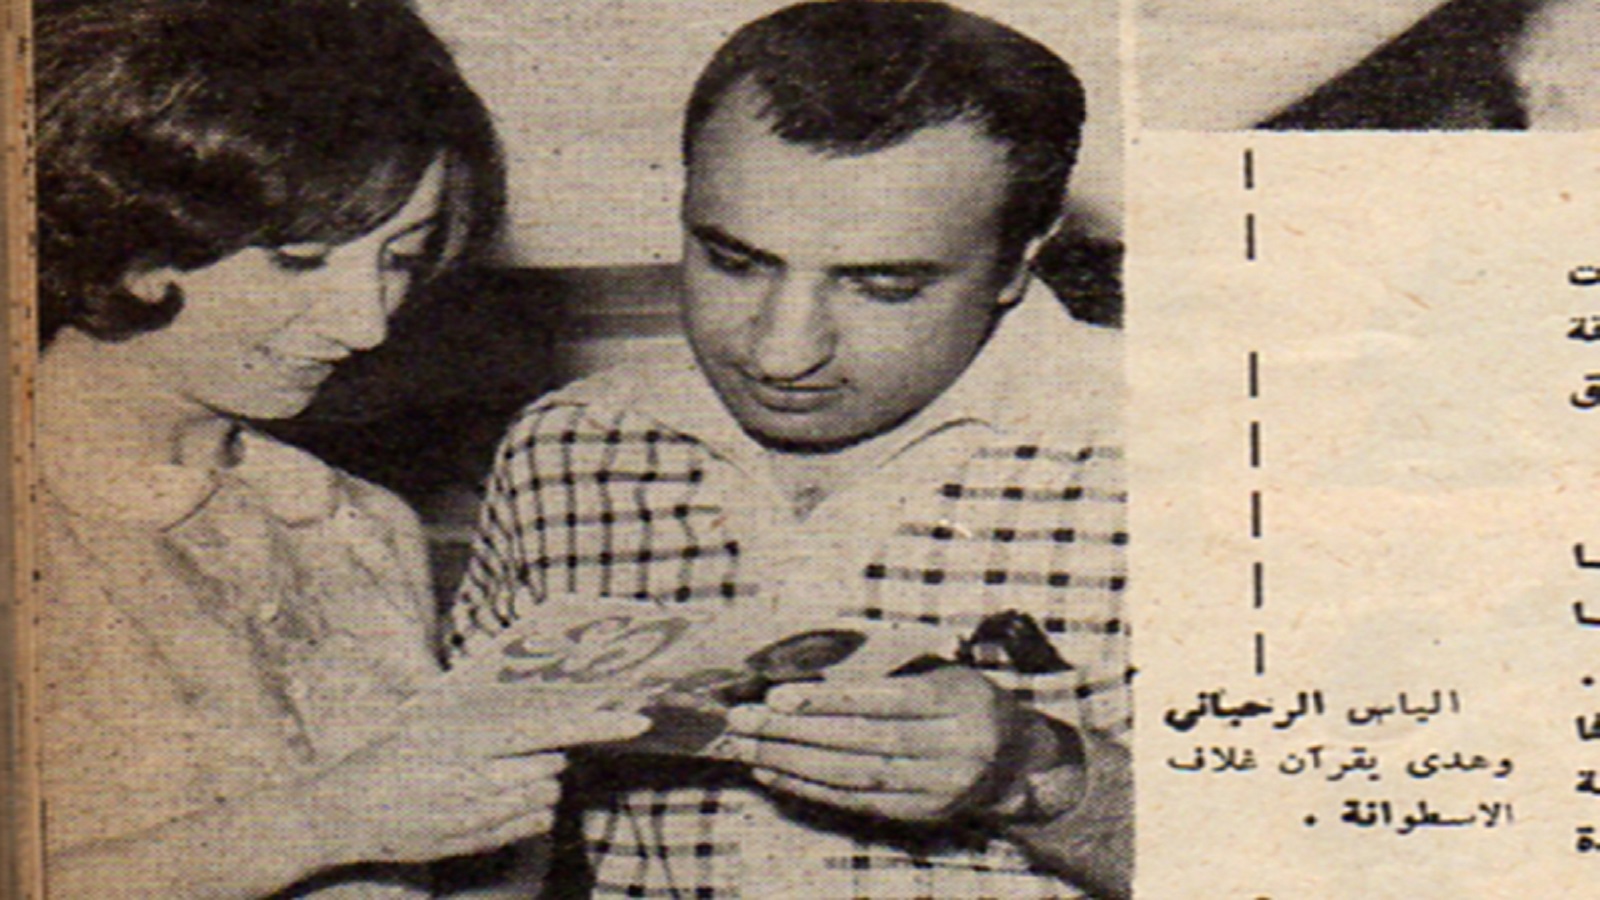  مع هدى، أيام "بضيعتنا الحلوة"، 1965.